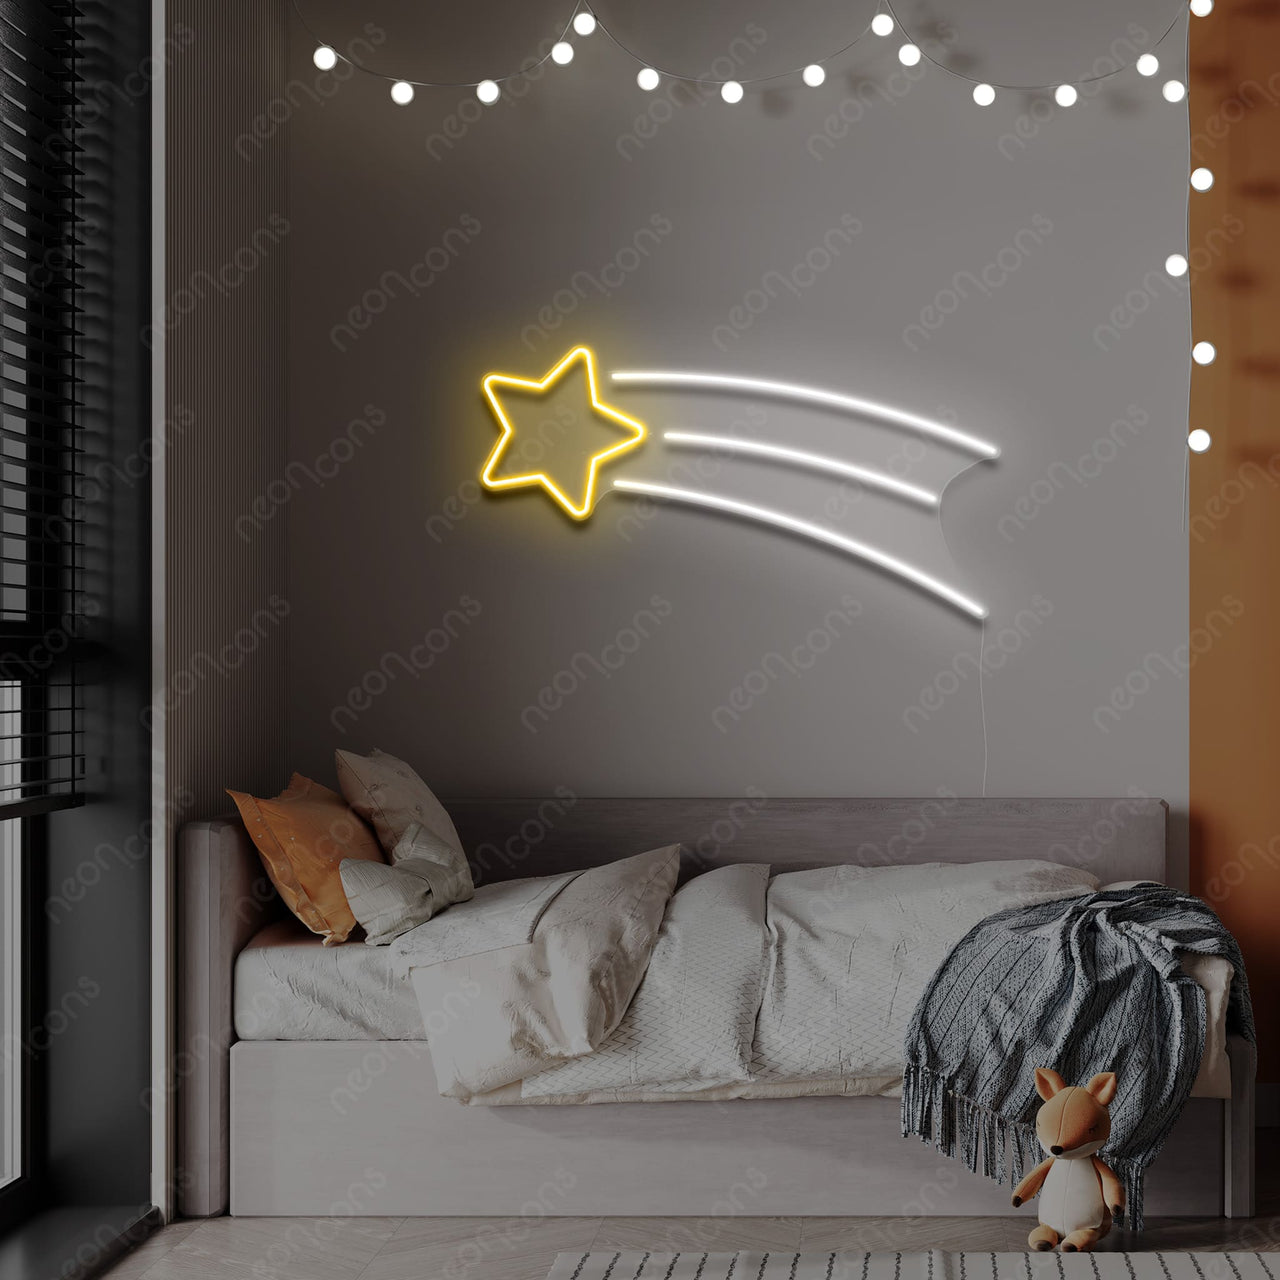 "Shooting Star" LED Neon